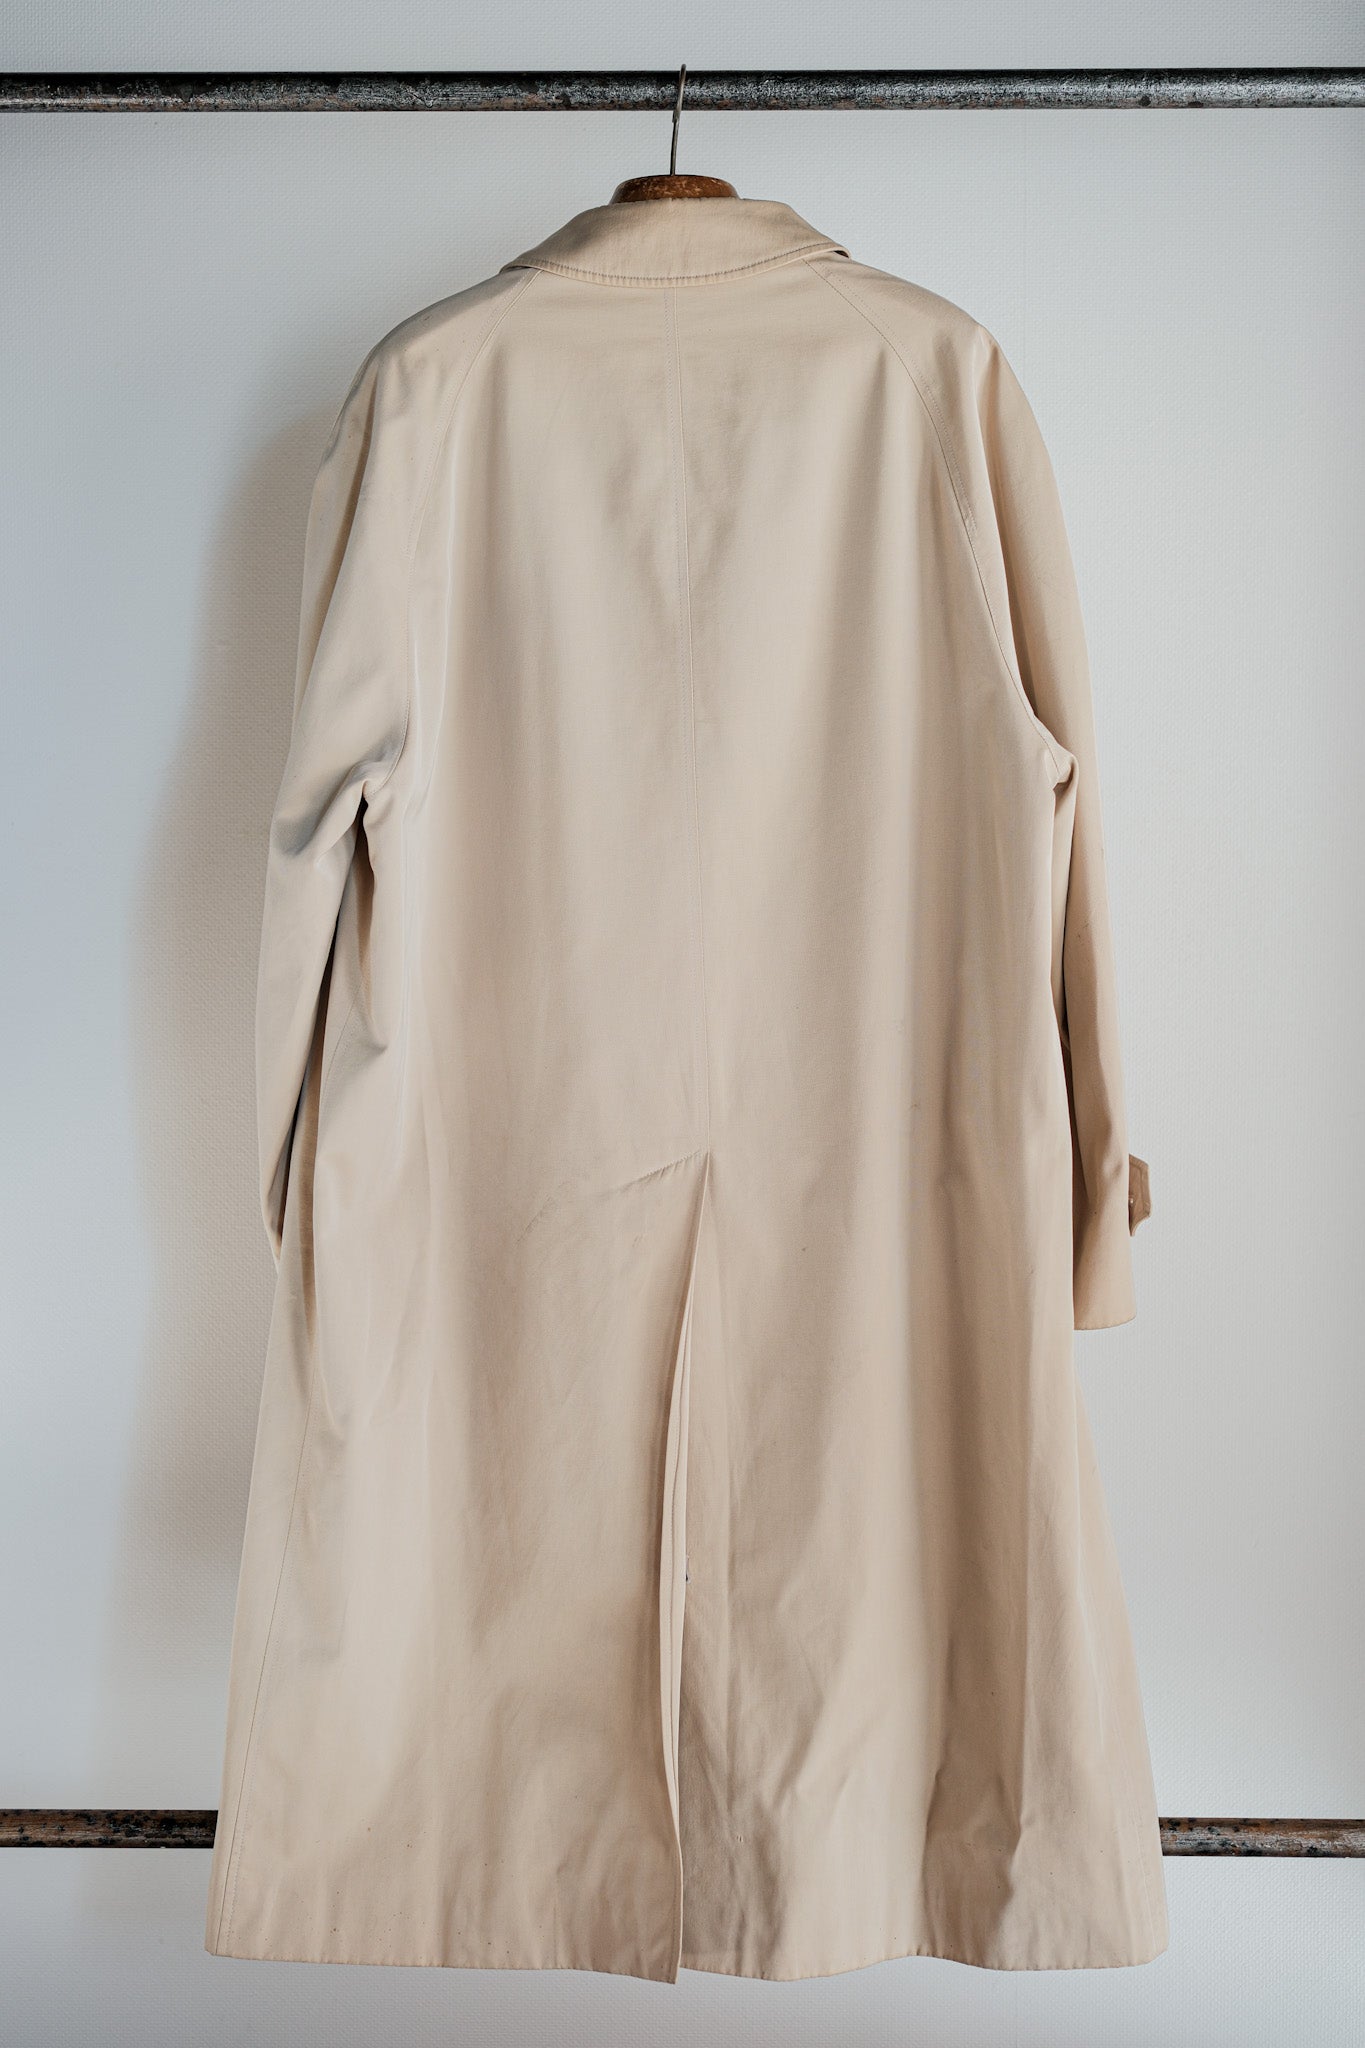 [~ 90's] Old Invertere Raglan Sleeve Balmacaan Coat Coat Cop Taille C100.42R "De Paz Note séparée"